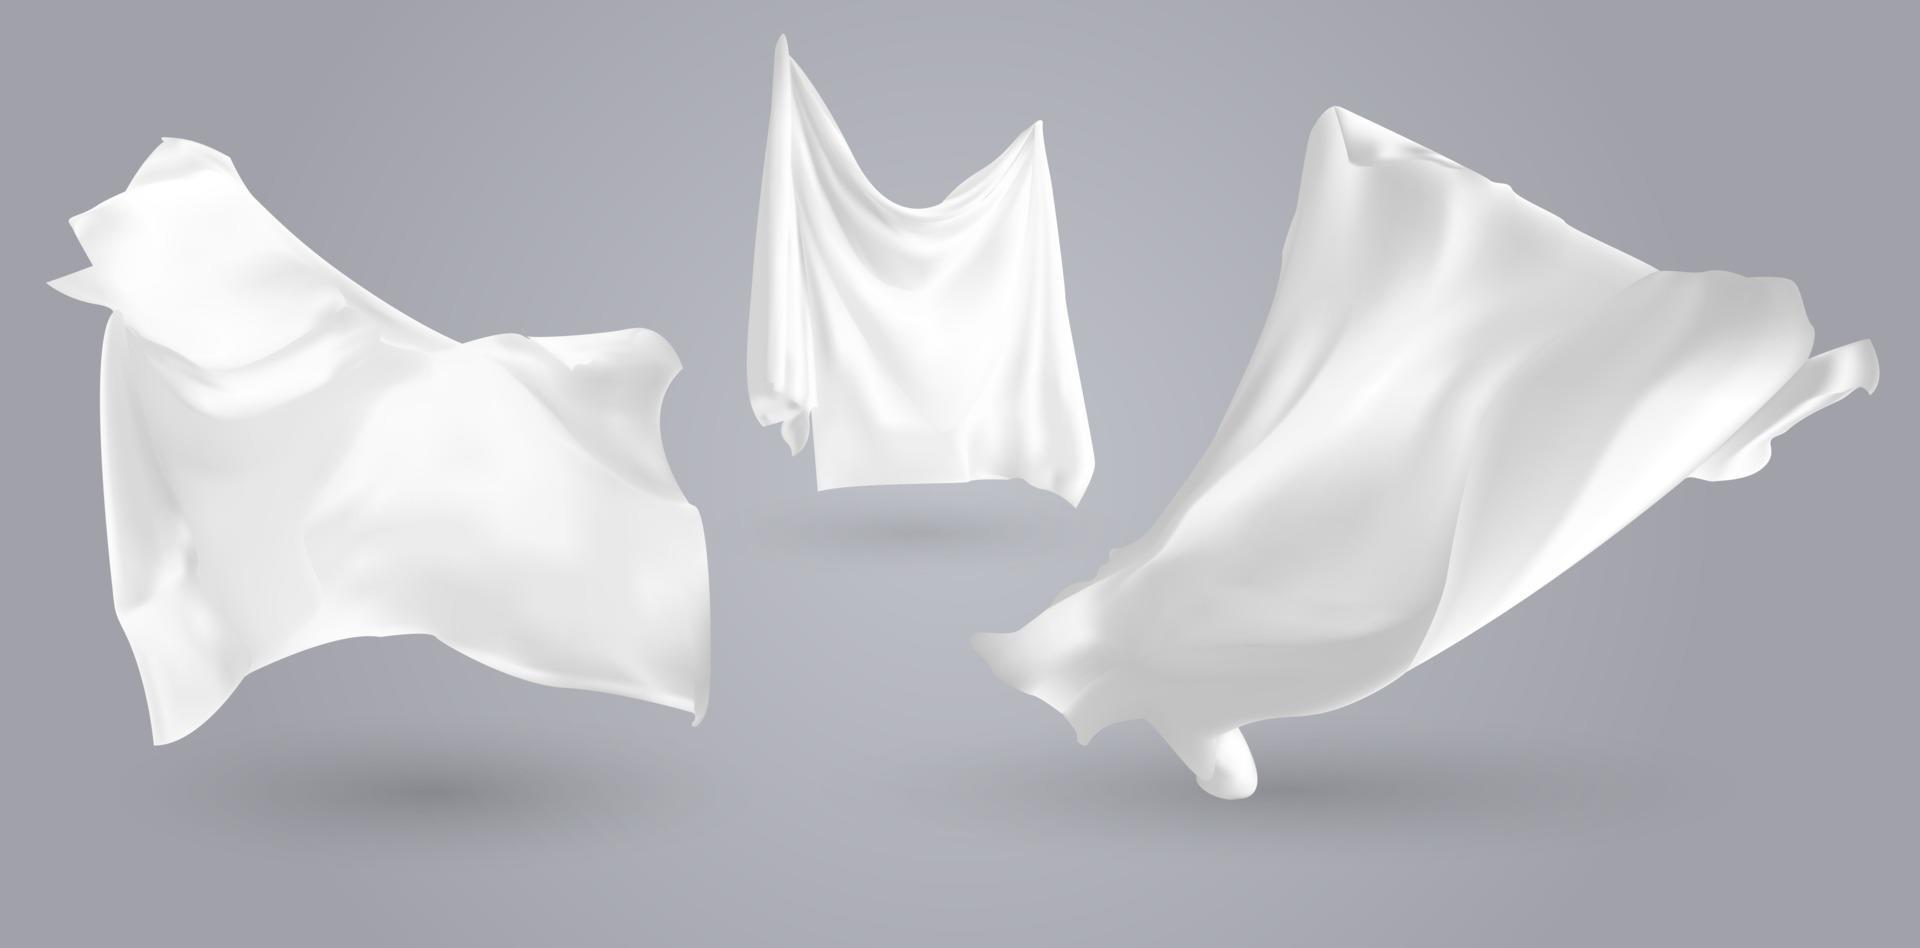 uppsättning realistiska fladdrande vita dukar mjukt lättviktigt klart material isolerad på grå bakgrundsvektorillustration vektor